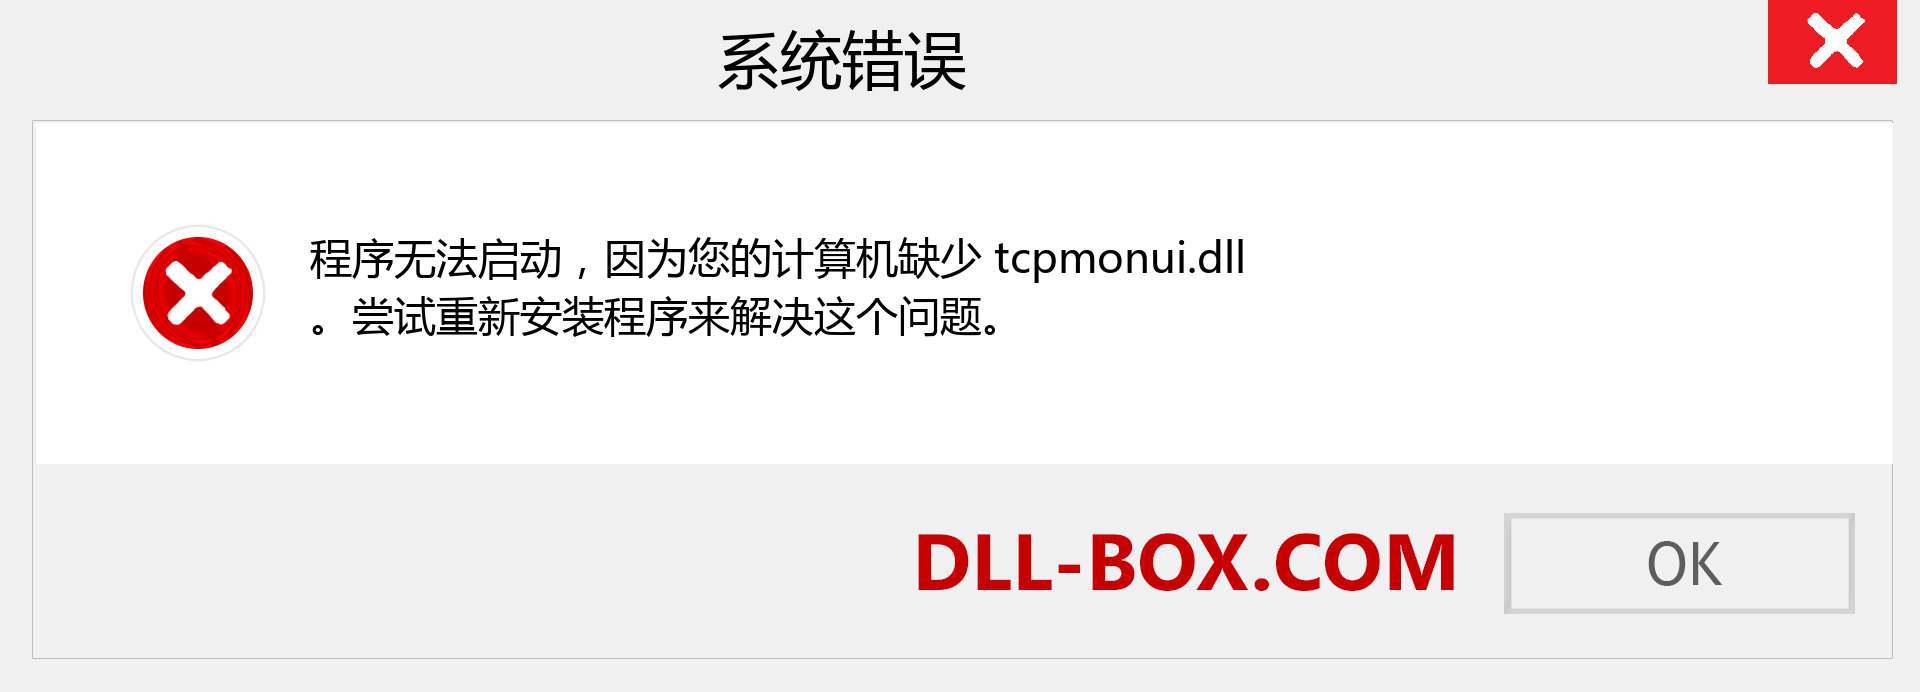 tcpmonui.dll 文件丢失？。 适用于 Windows 7、8、10 的下载 - 修复 Windows、照片、图像上的 tcpmonui dll 丢失错误